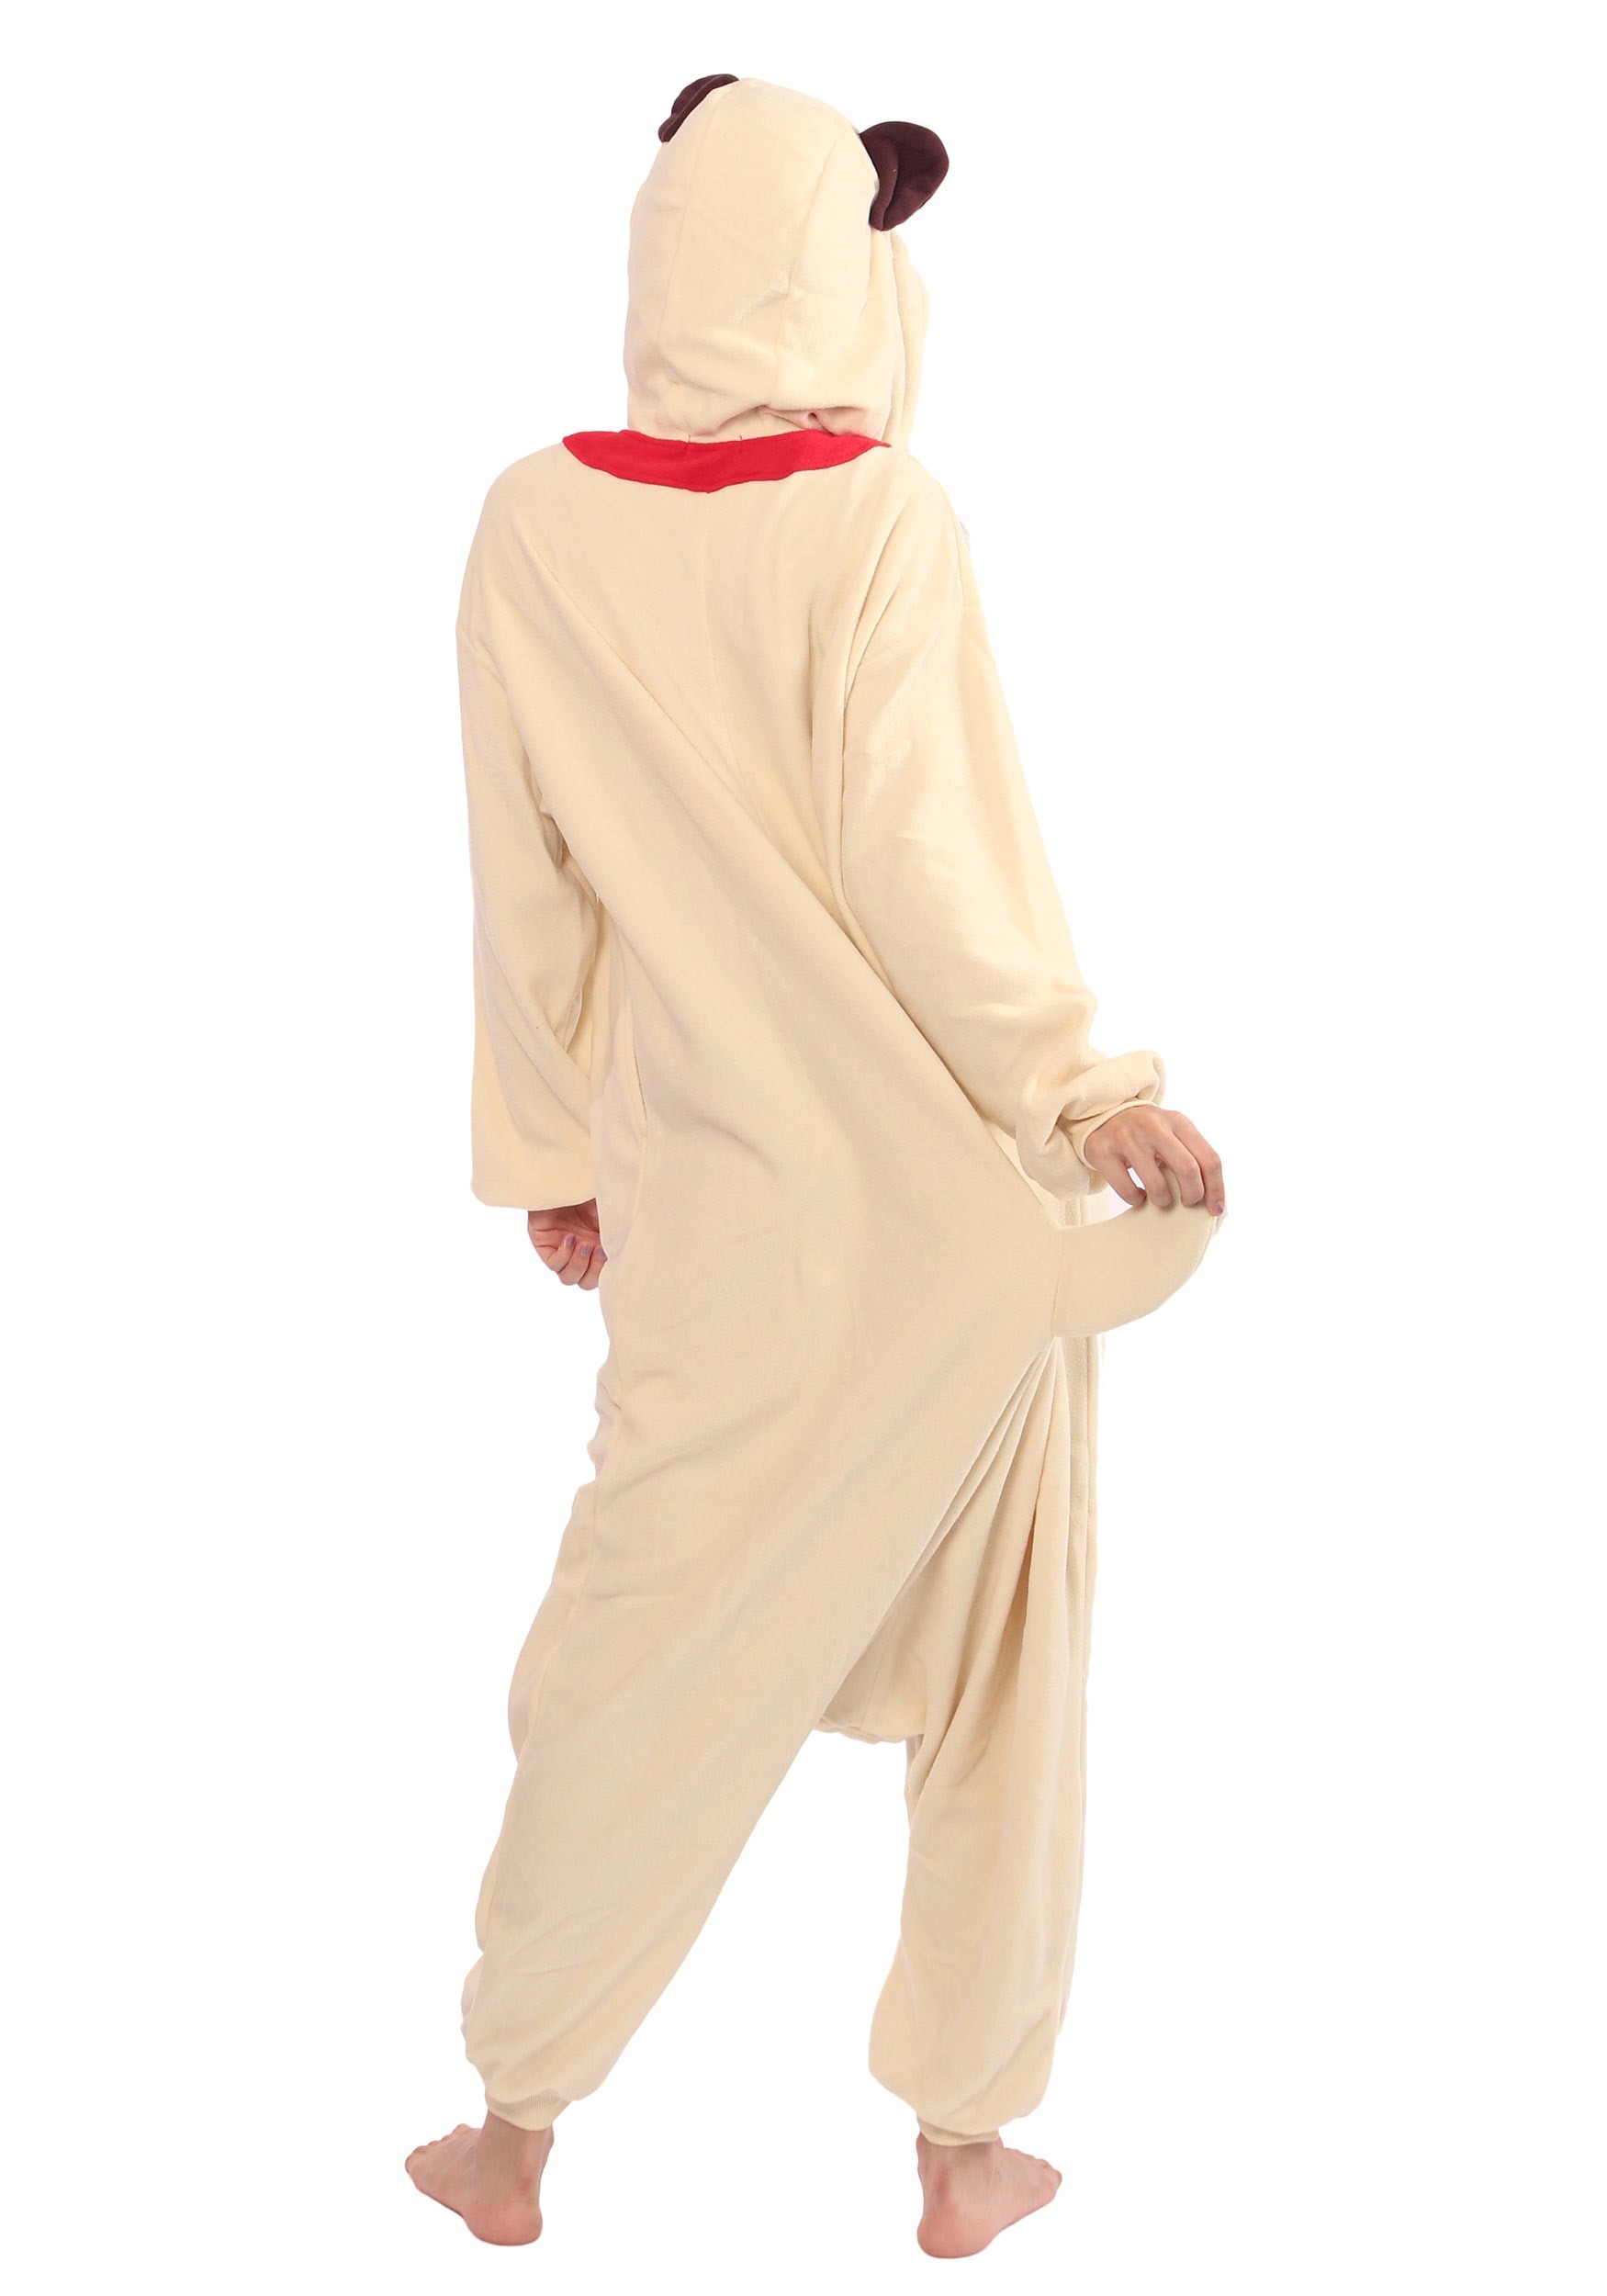 Disfraz de pijama para adultos pug kigurumi Multicolor Colombia